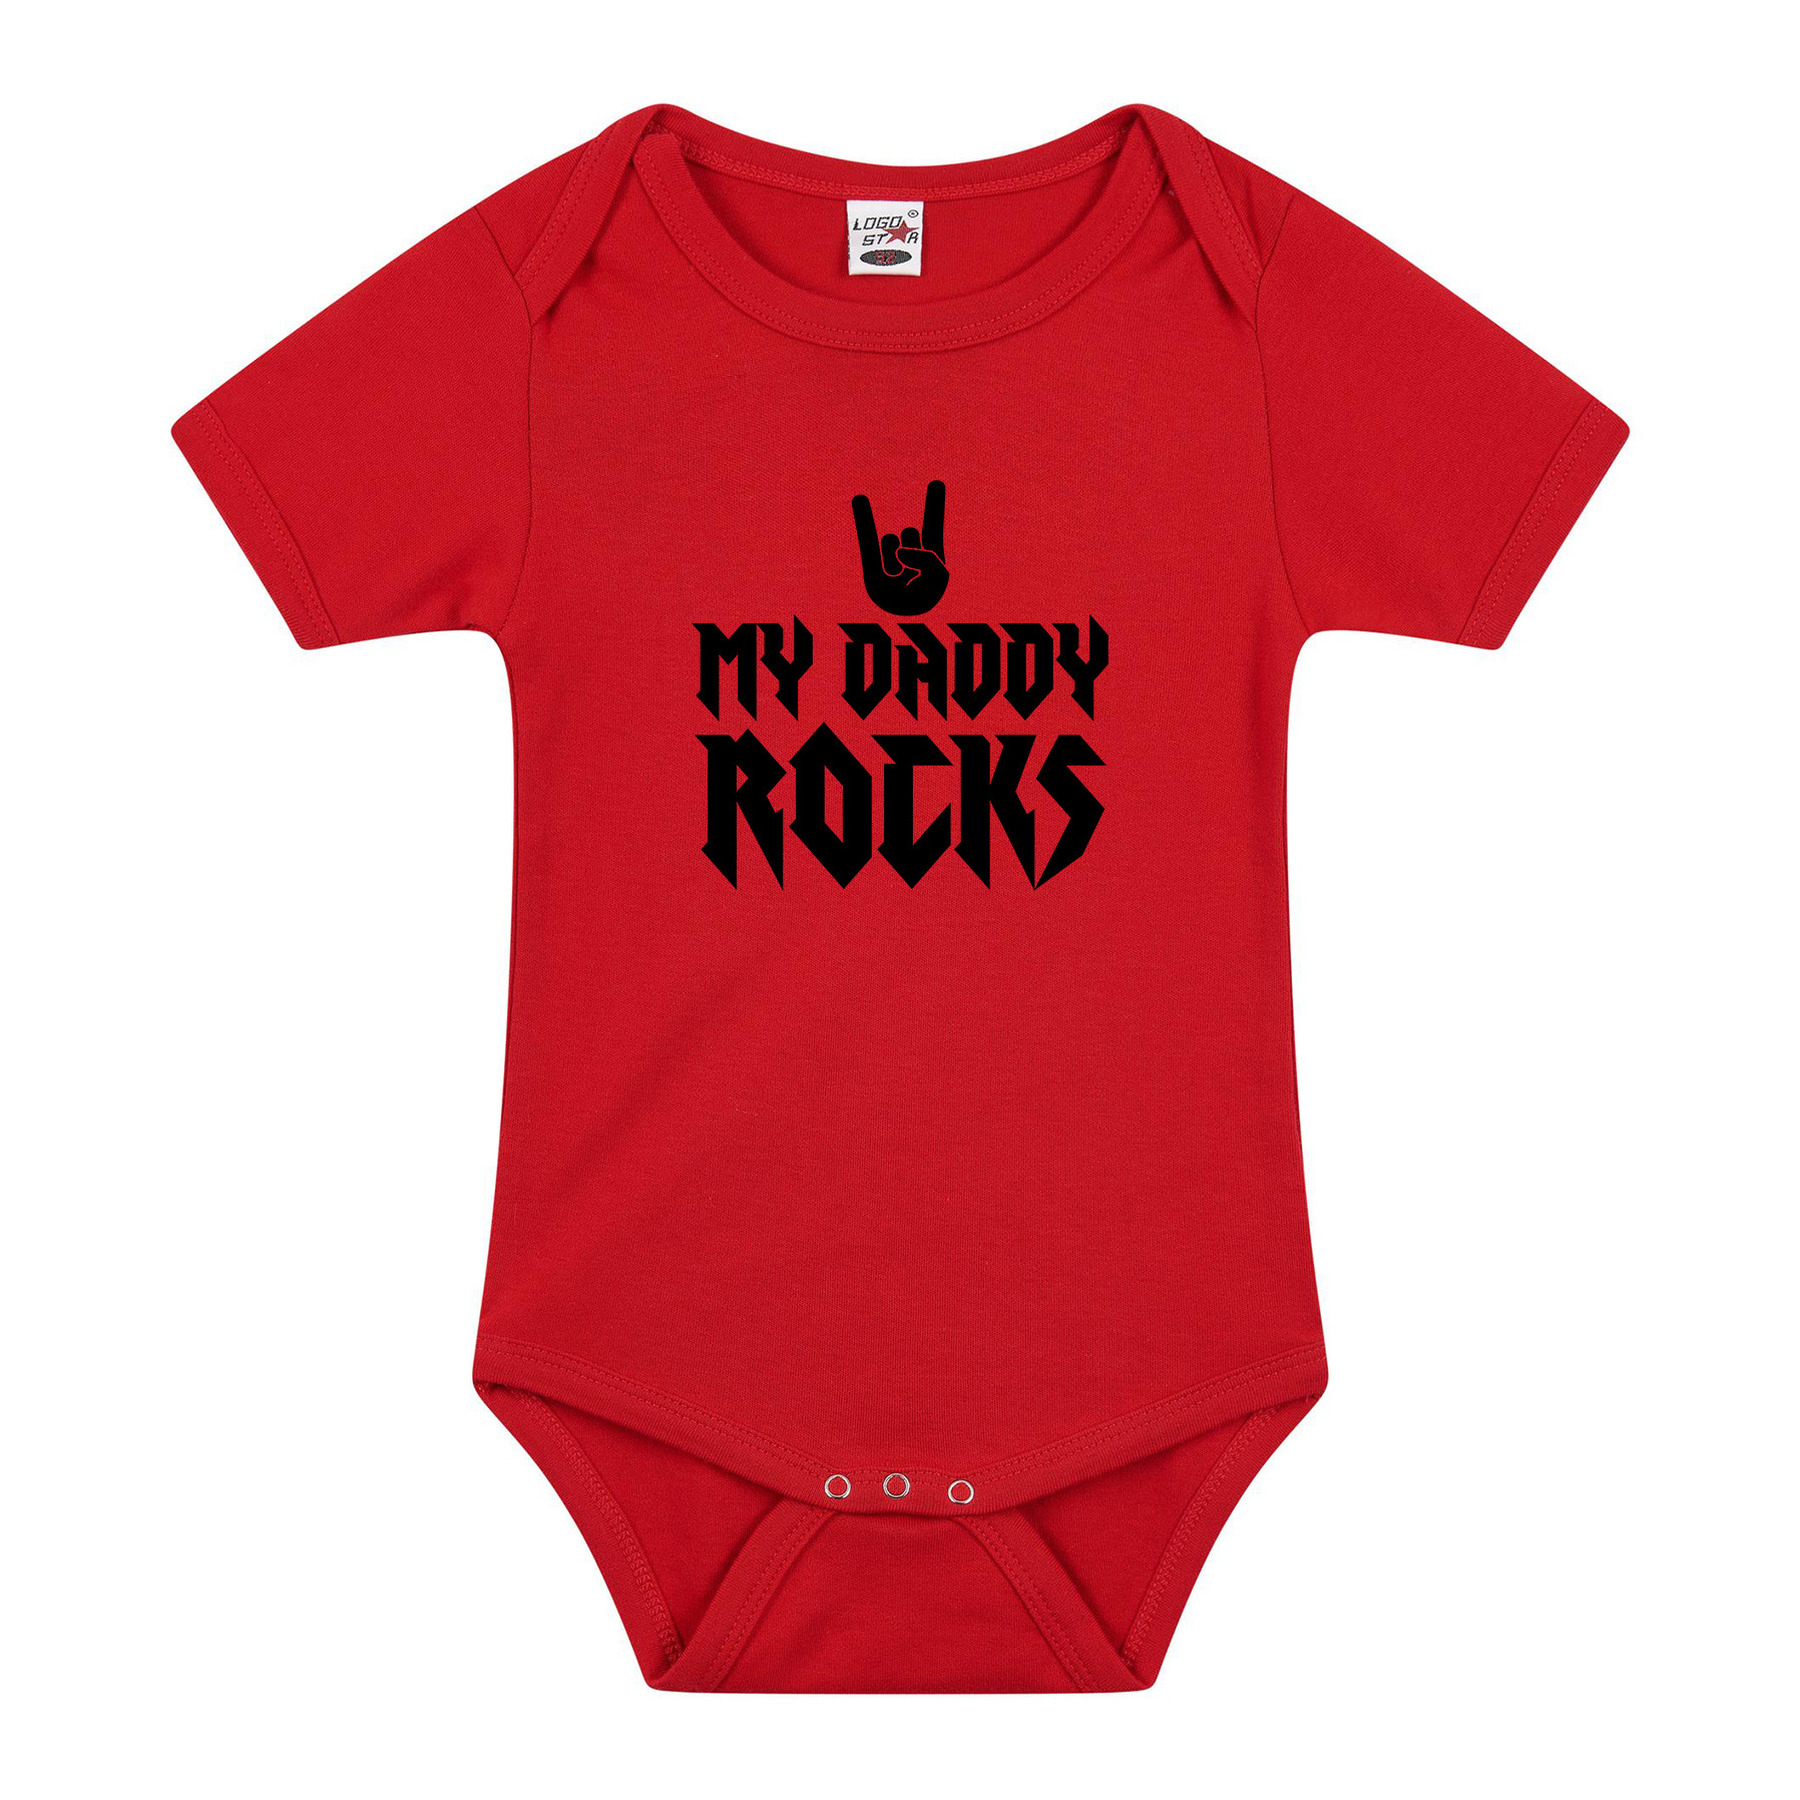 Daddy rocks cadeau baby rompertje rood jongen/meisje